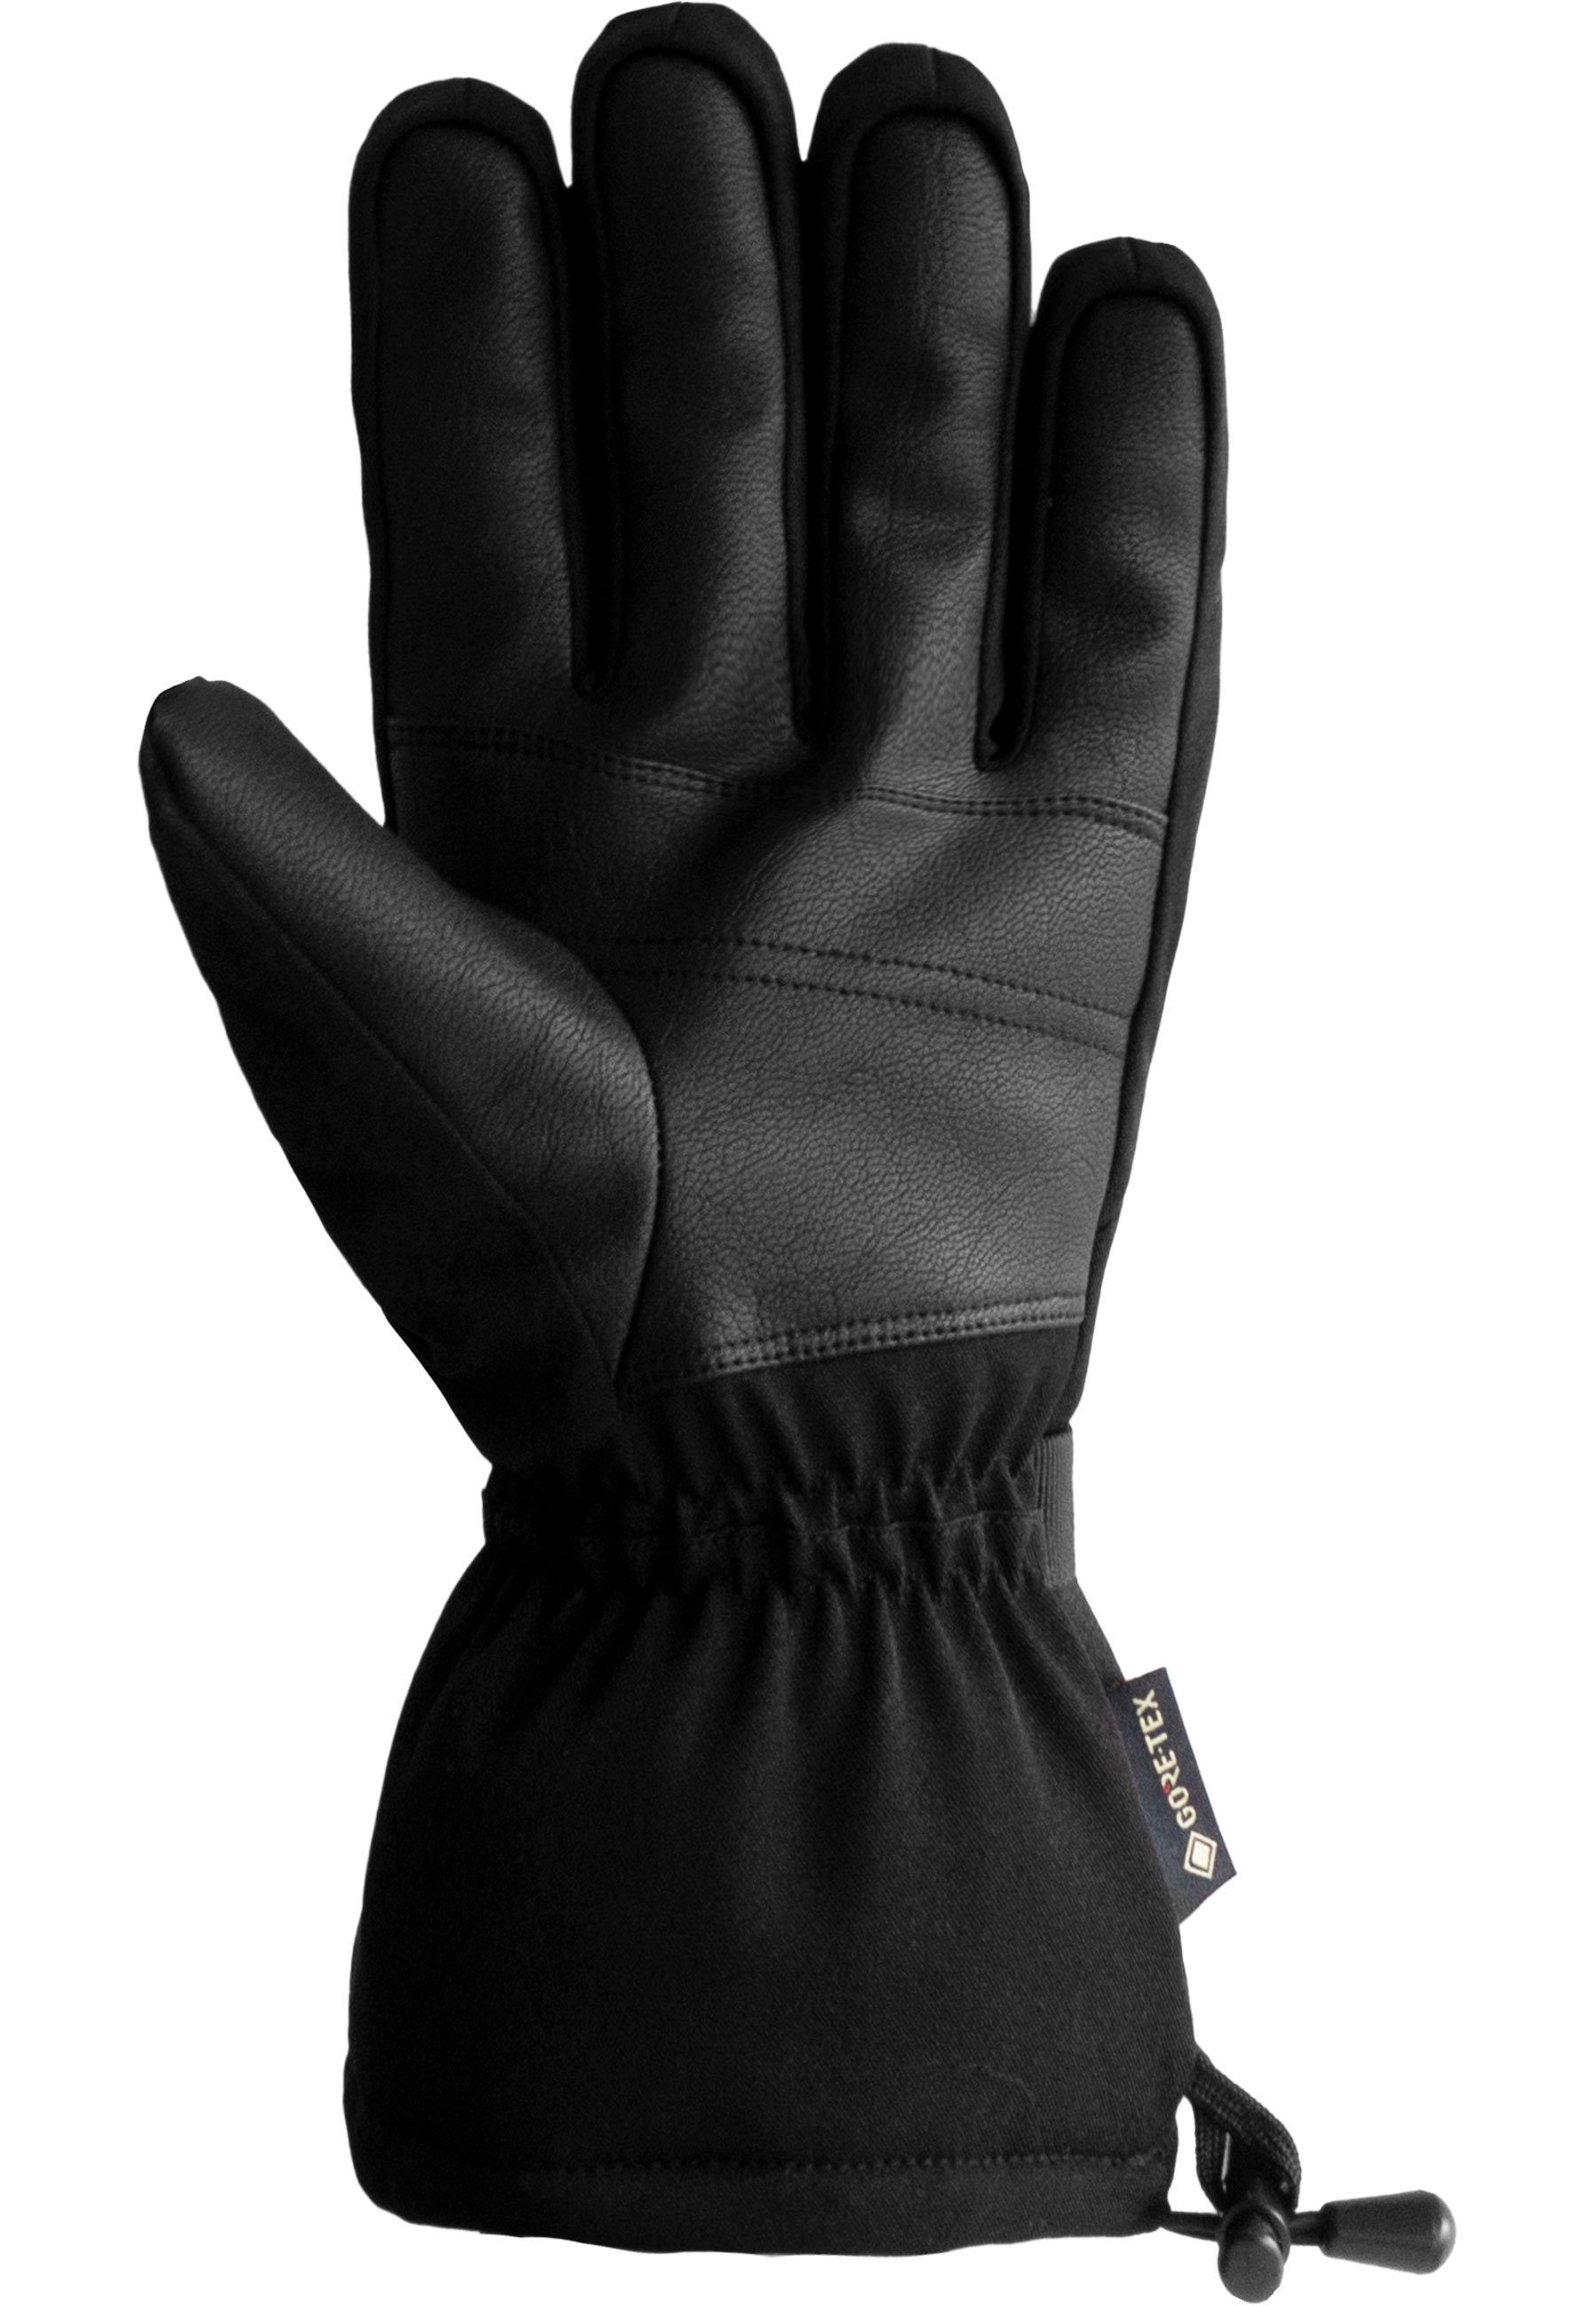 Reusch Skihandschuhe Winter Glove Warm wasserdichtem atmungsaktivem aus GORE-TEX und Material